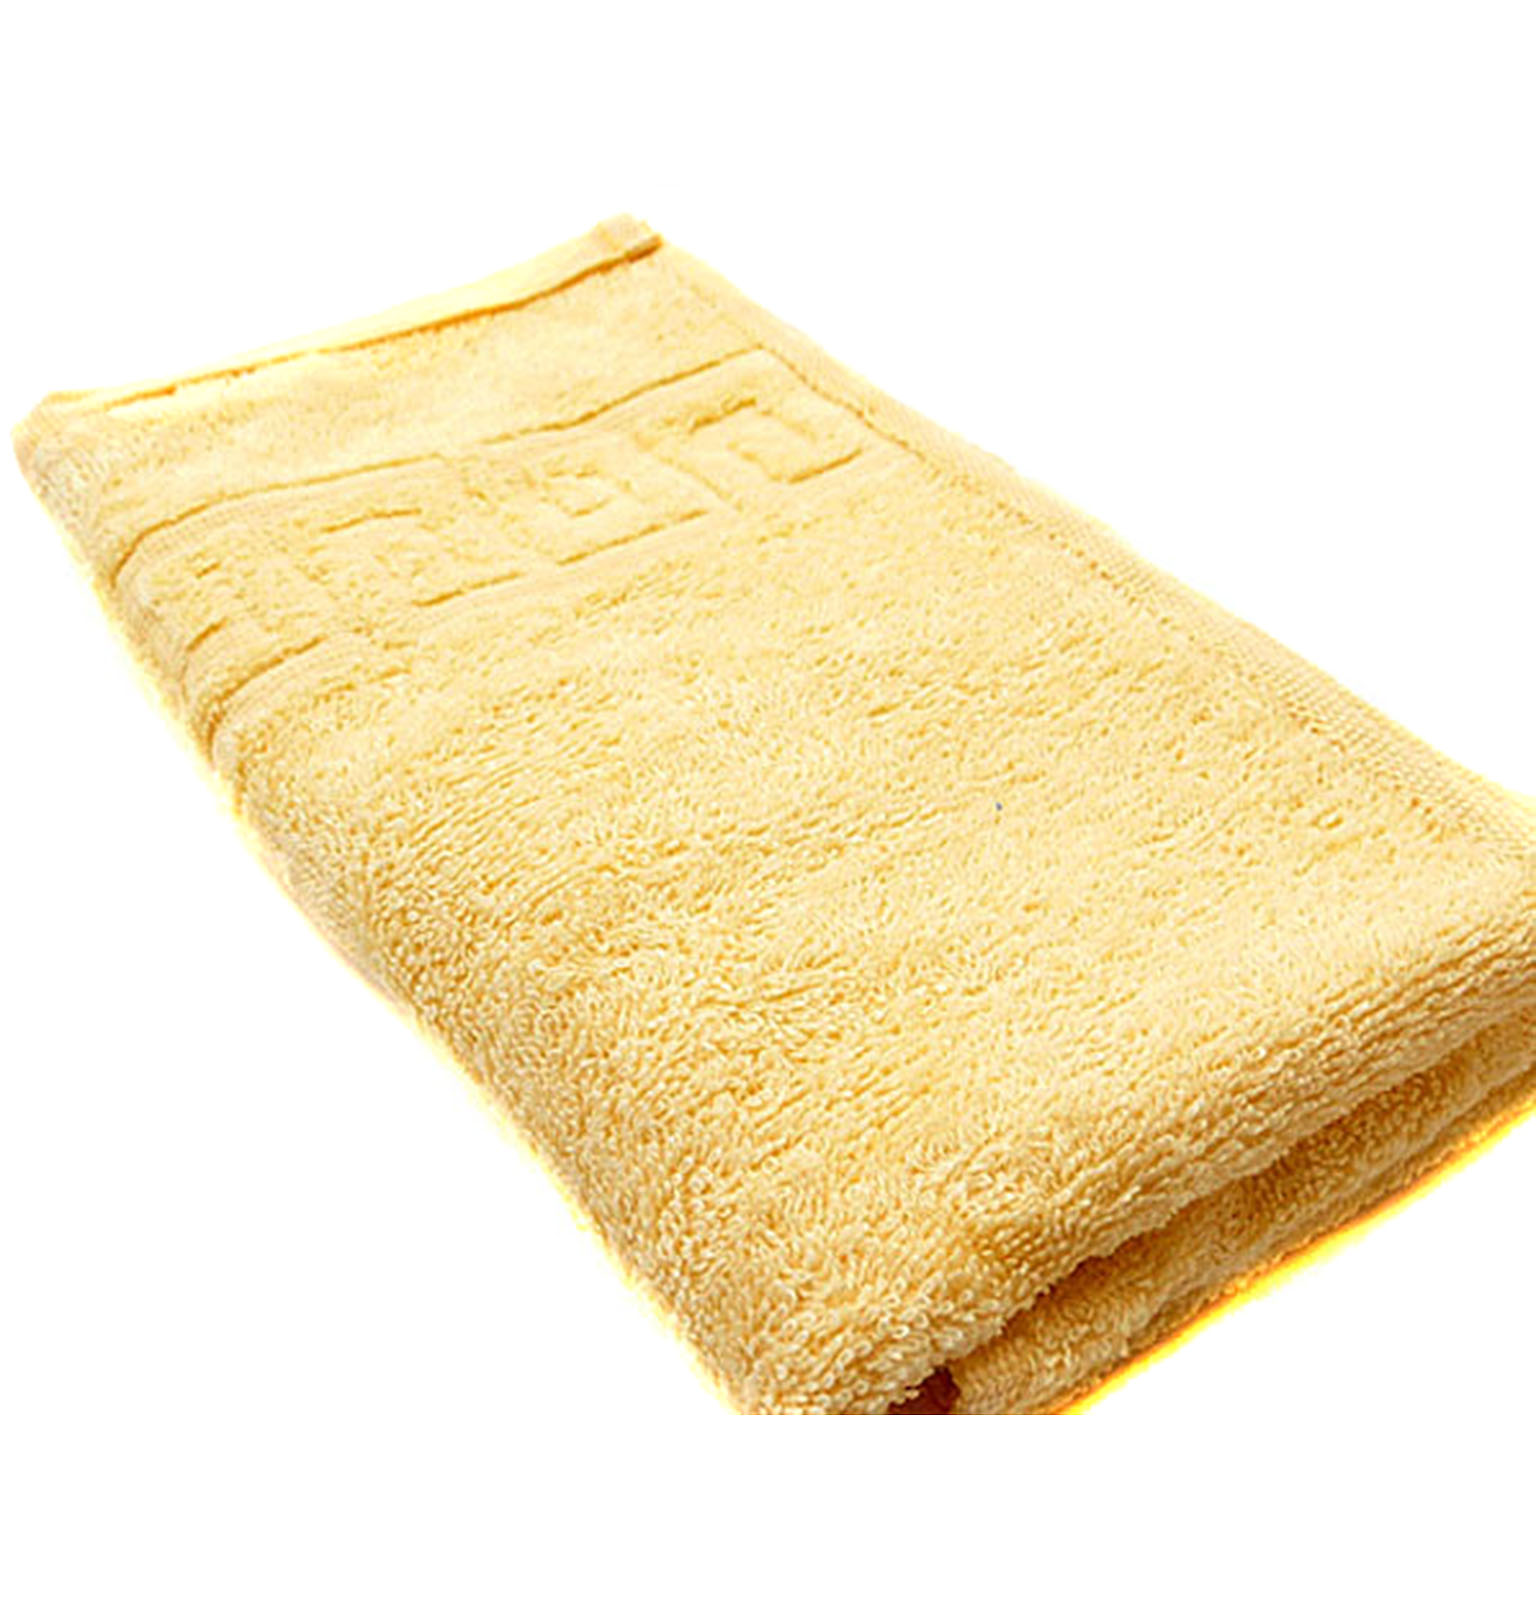 Куплю дешево полотенца